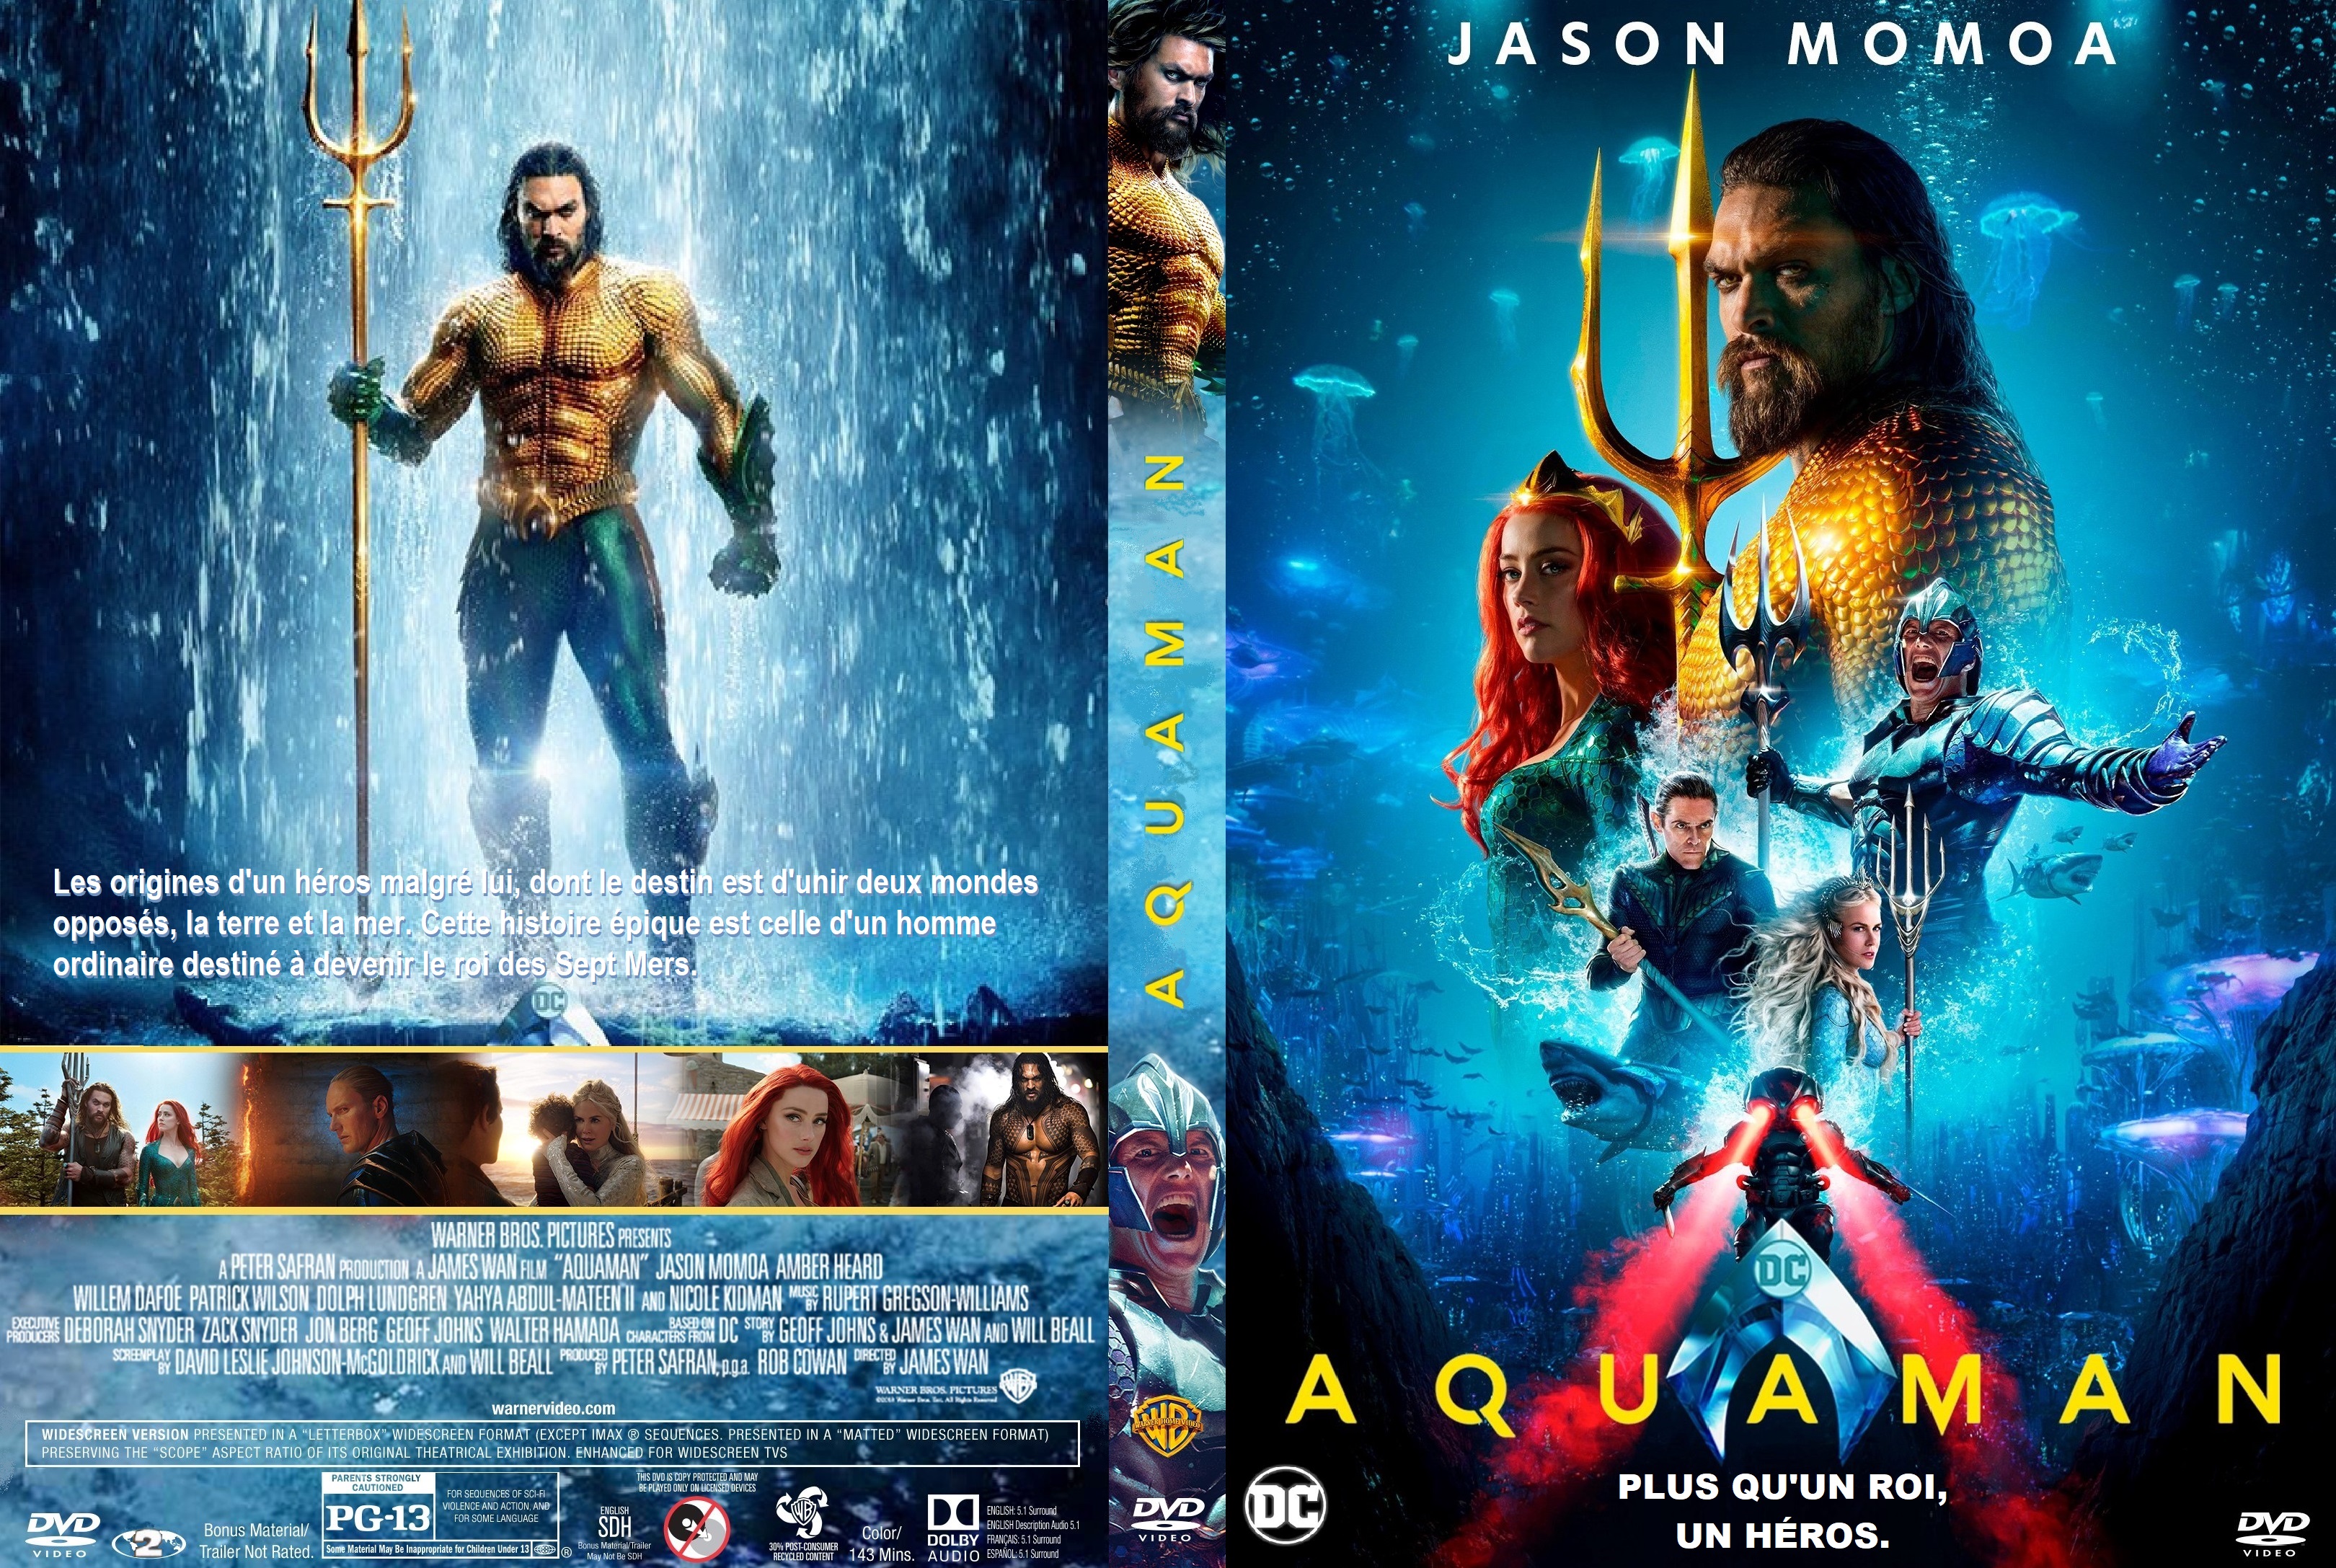 Jaquette DVD Aquaman custom v2